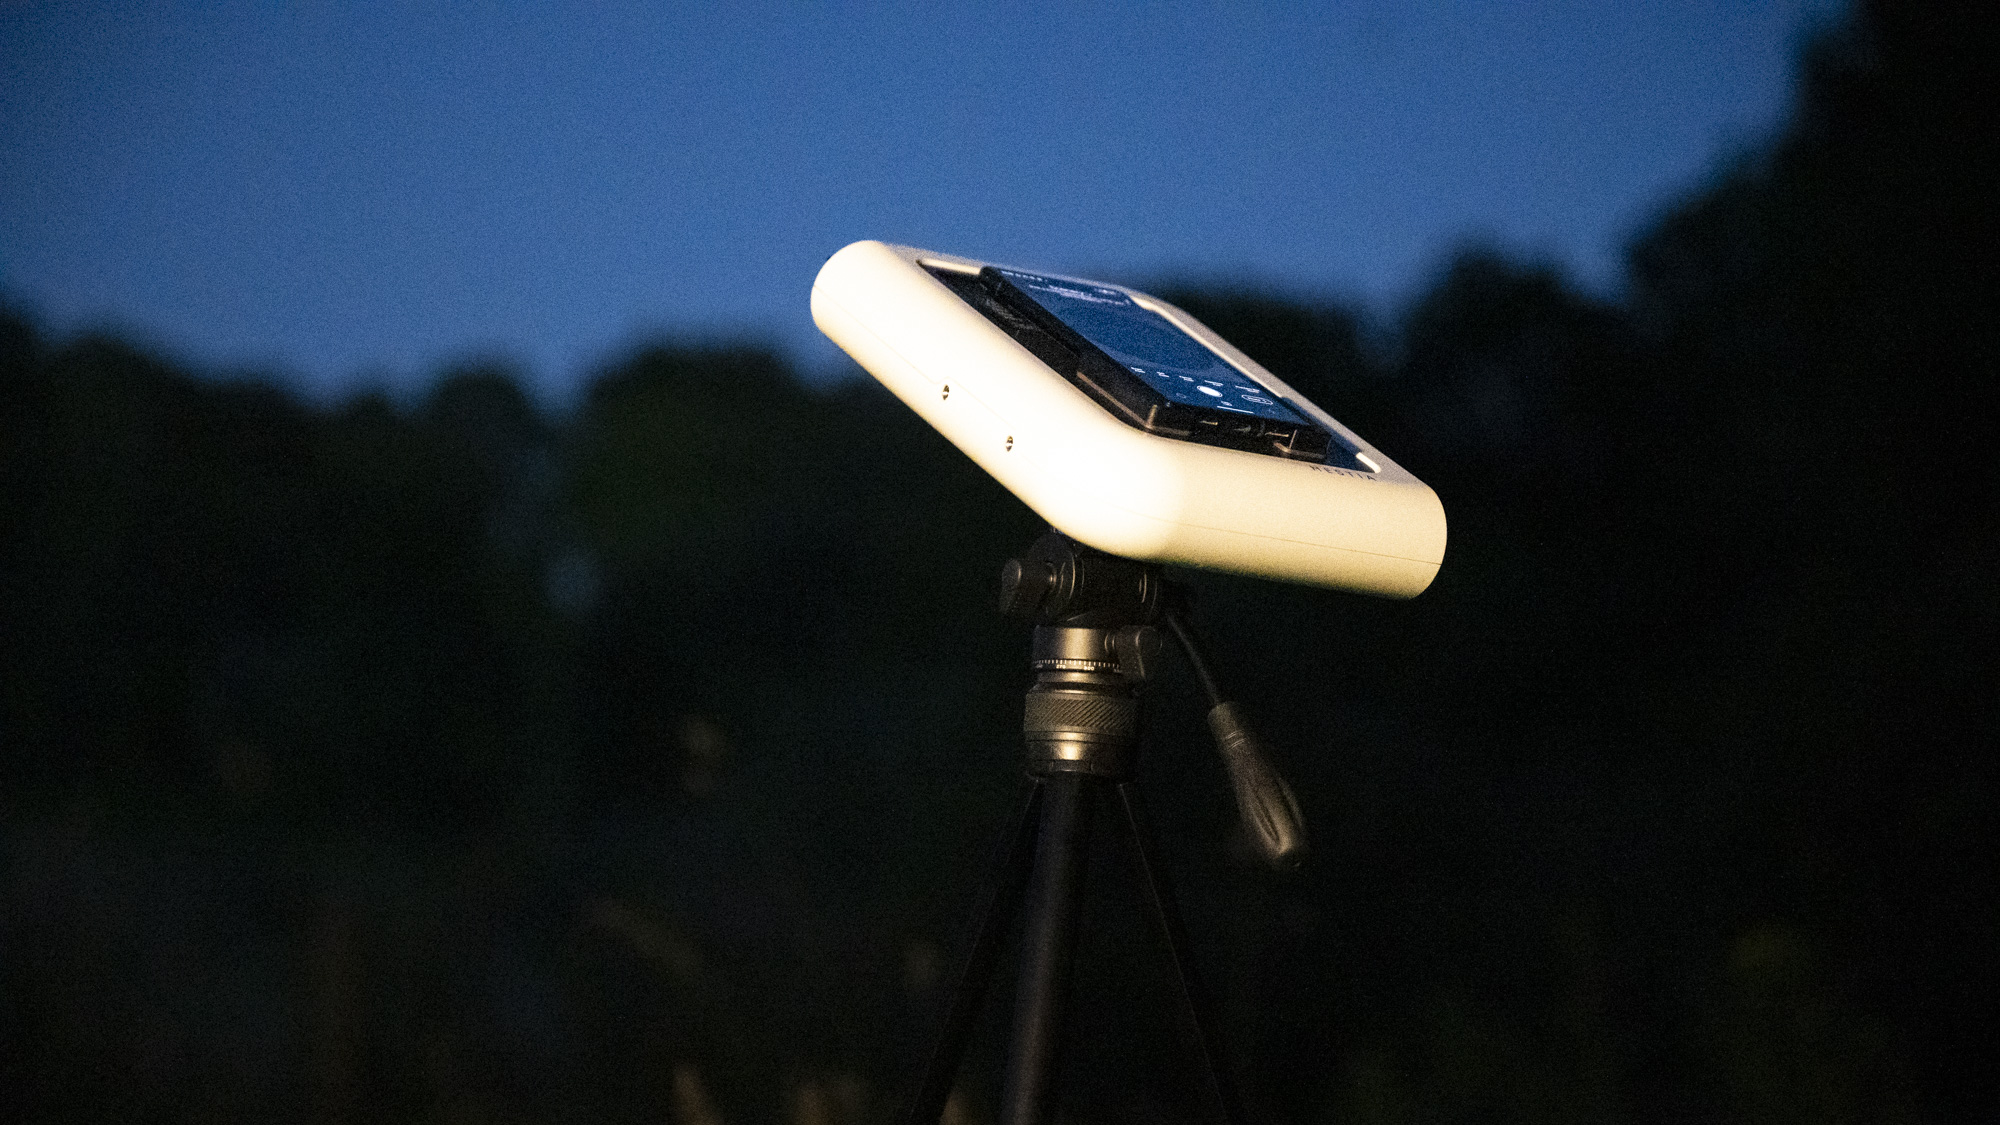 Telescopio inteligente Vaonis Hestia sobre un trípode apuntando al cielo nocturno con un teléfono Google Pixel conectado